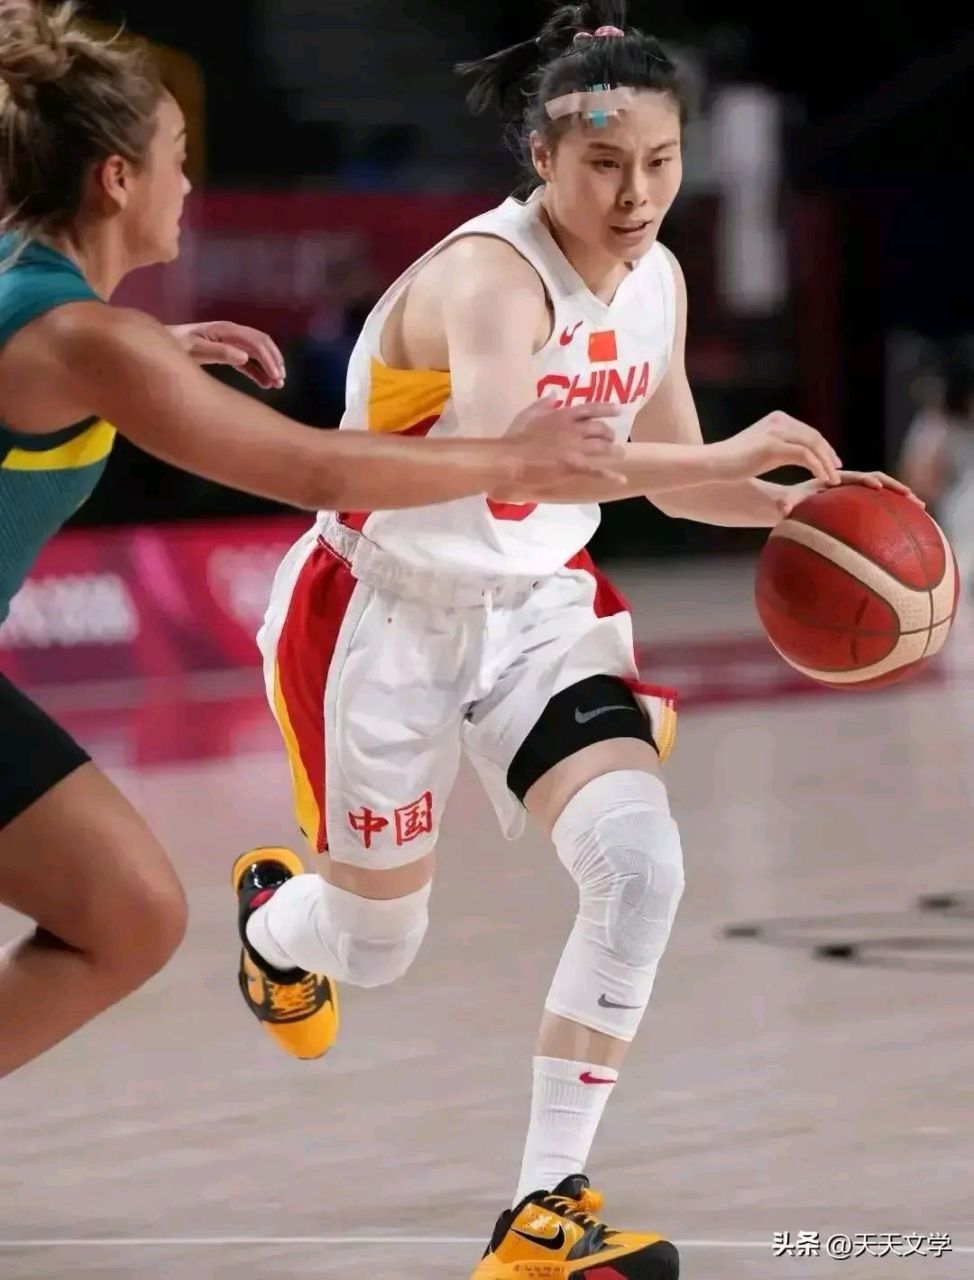 王思雨icon,女篮的美女球员,身高175cm,体重60kg,拥有漂亮的面容,标准